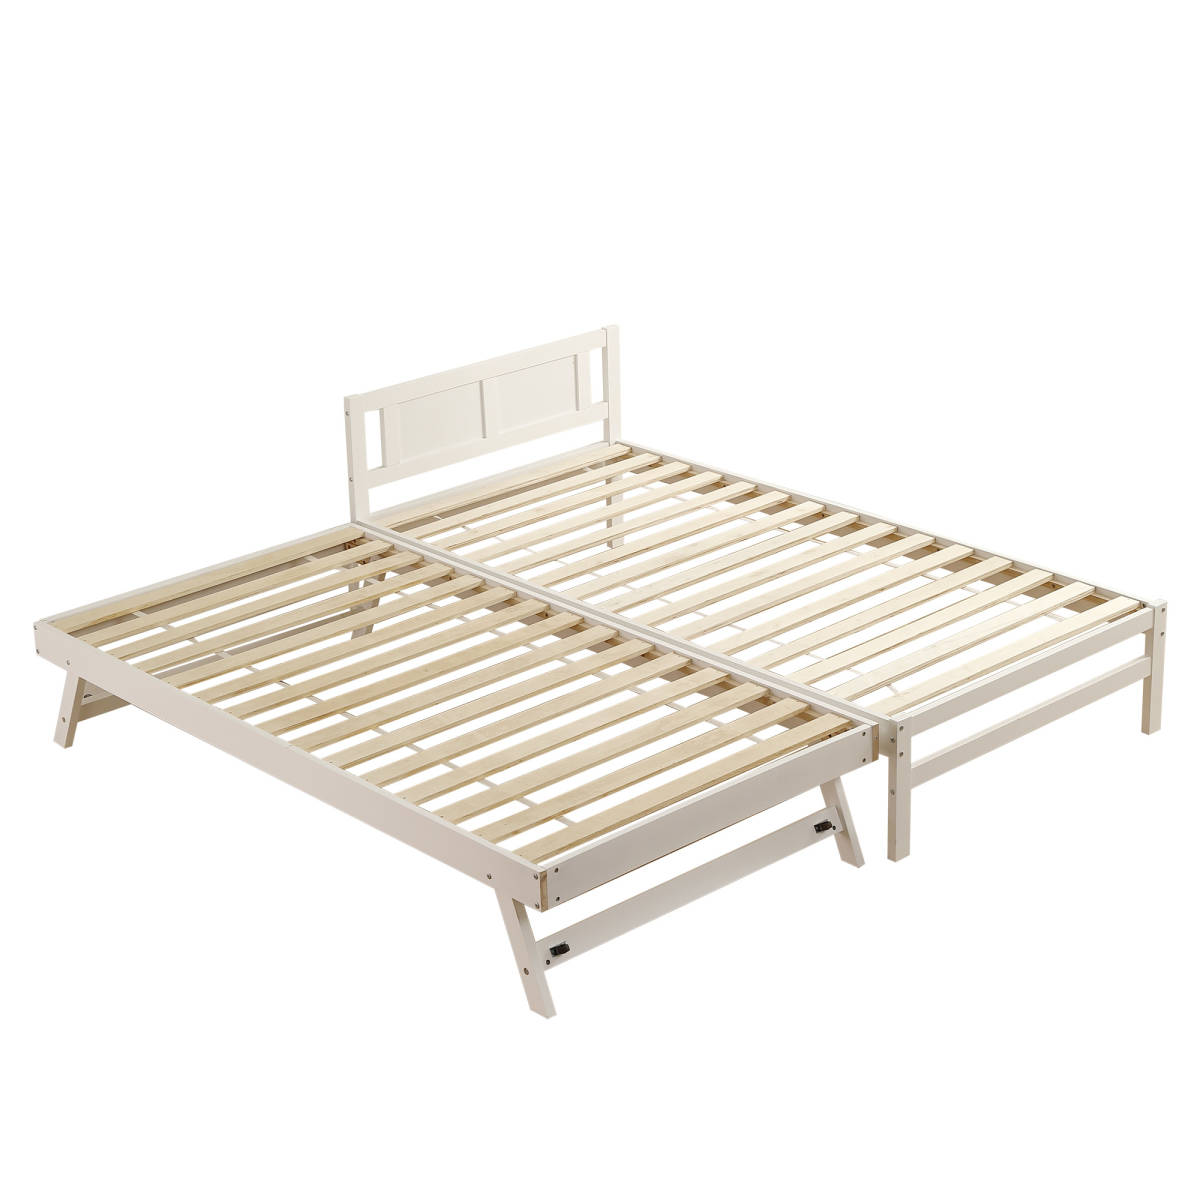 [ новый продукт ][ белый ] родители . bed двухъярусная кровать дерево bed одиночная кровать ti bed extra bed место хранения Северная Европа способ модный 